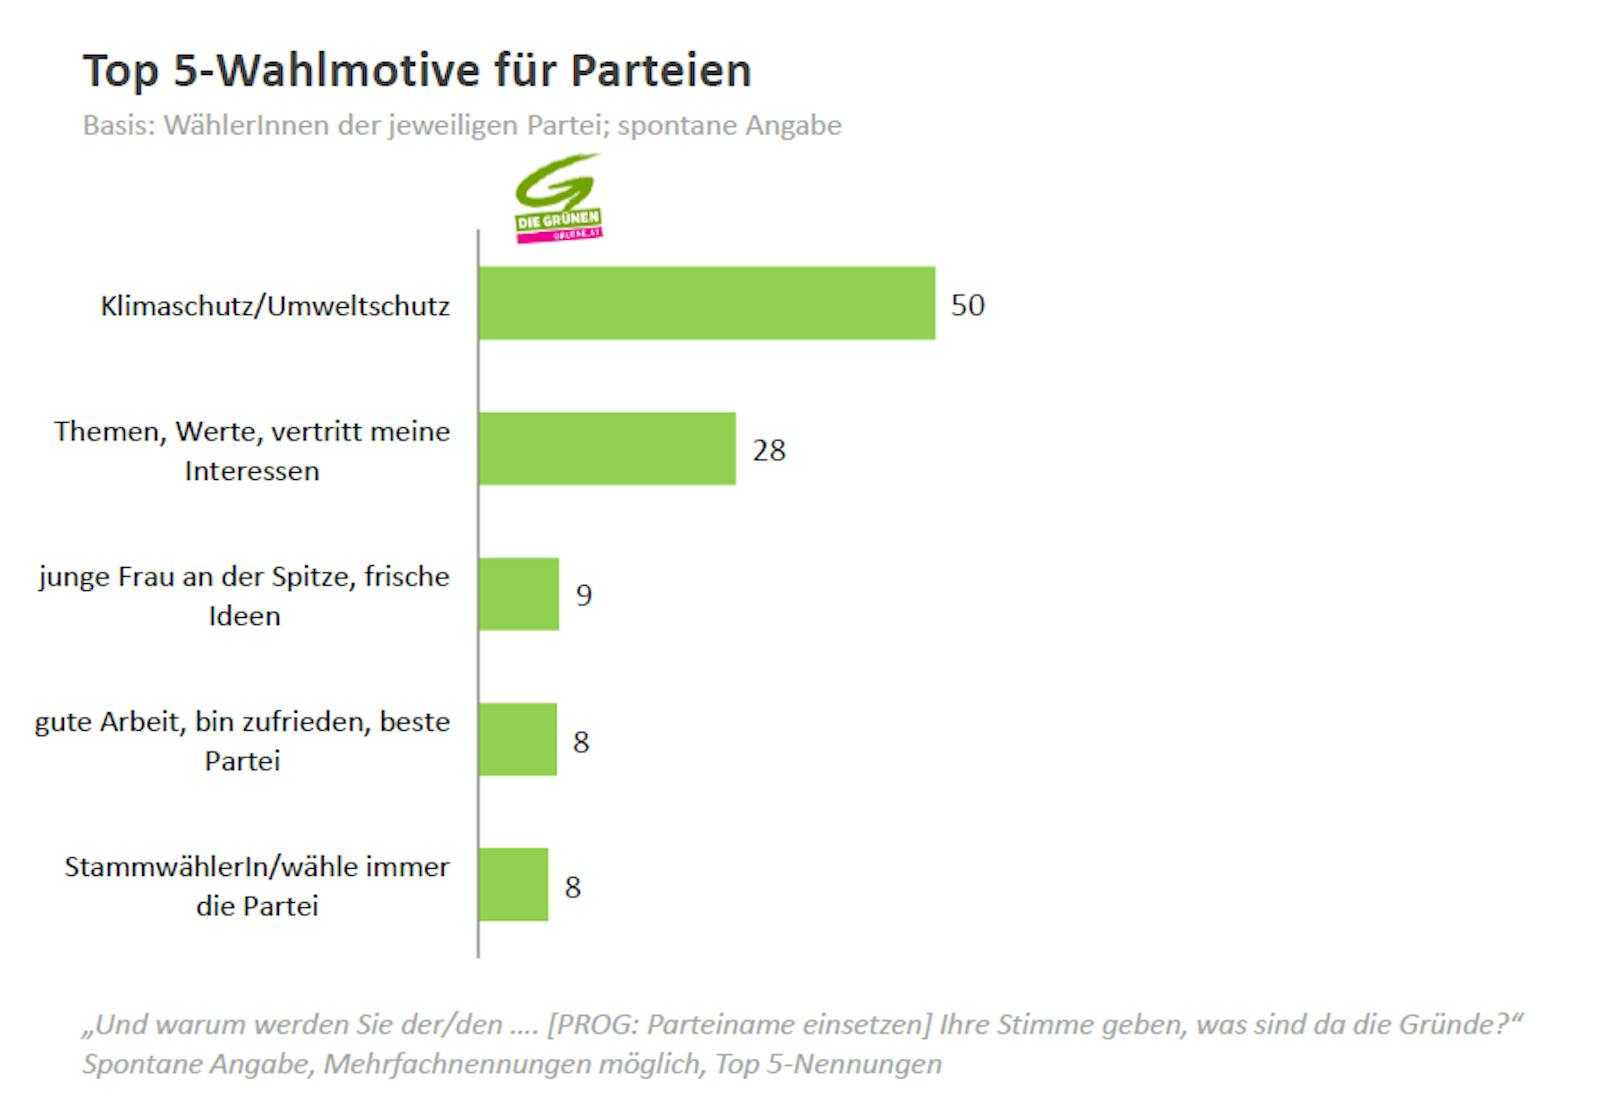 Top 5-Wahlmotive für Grüne.